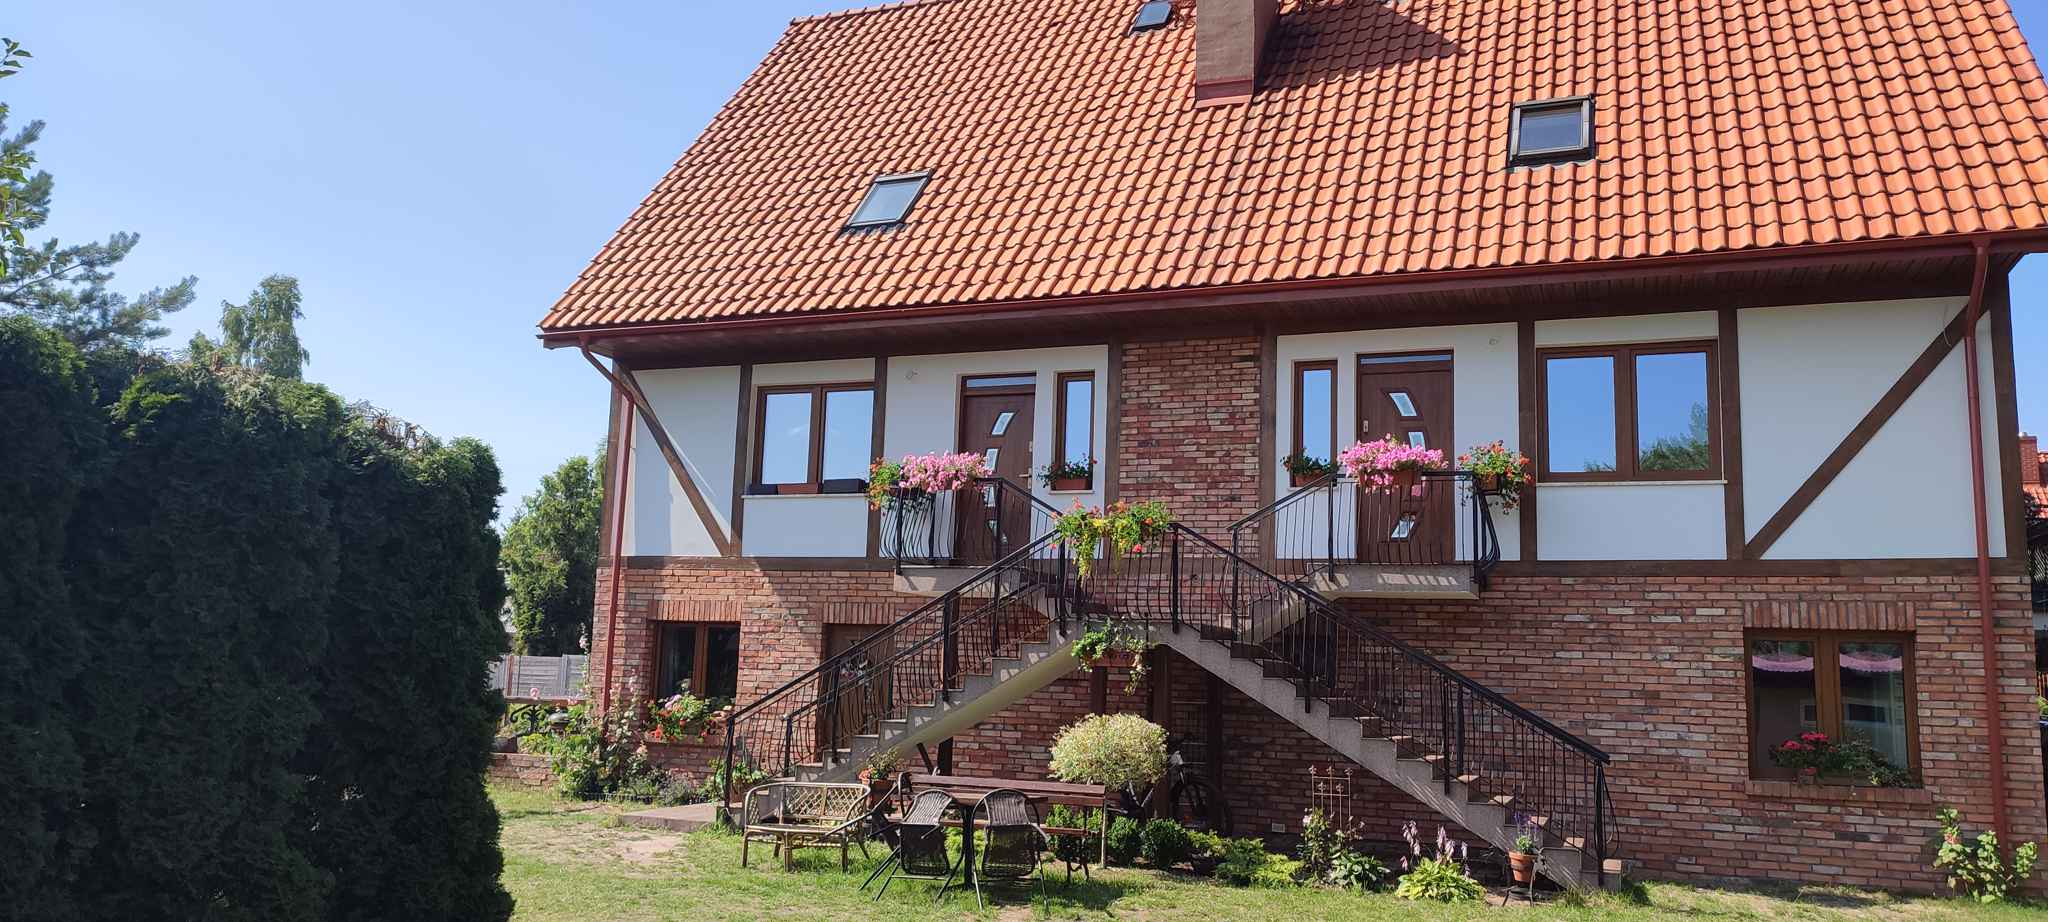 Ferienhaus in Seenähe und nur 5 km vom Meer  in Polen